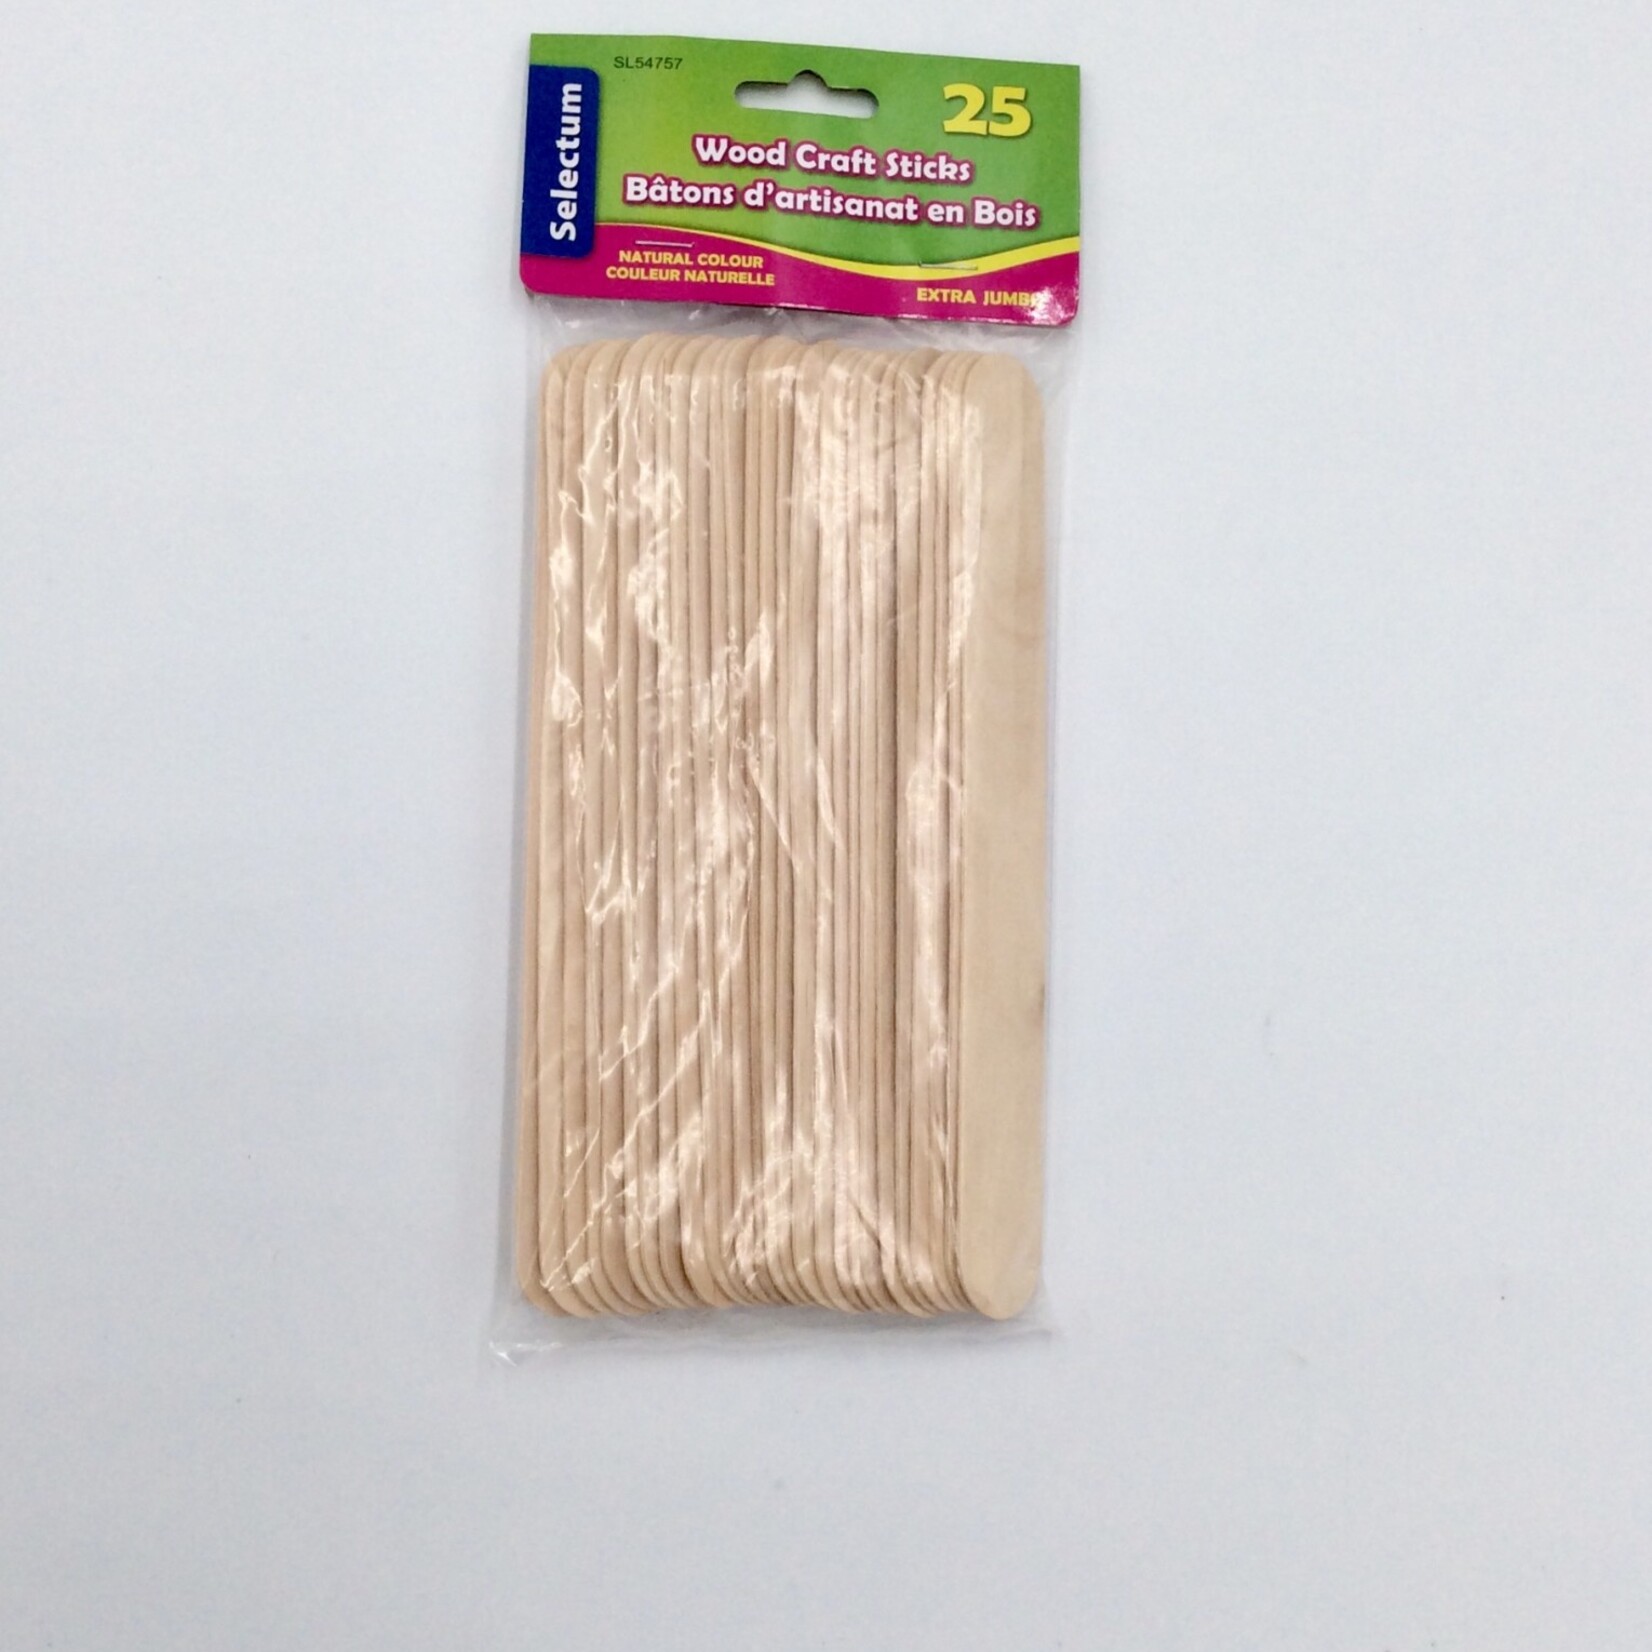 Extra Jumbo Natural Popsicle Sticks 25pk.